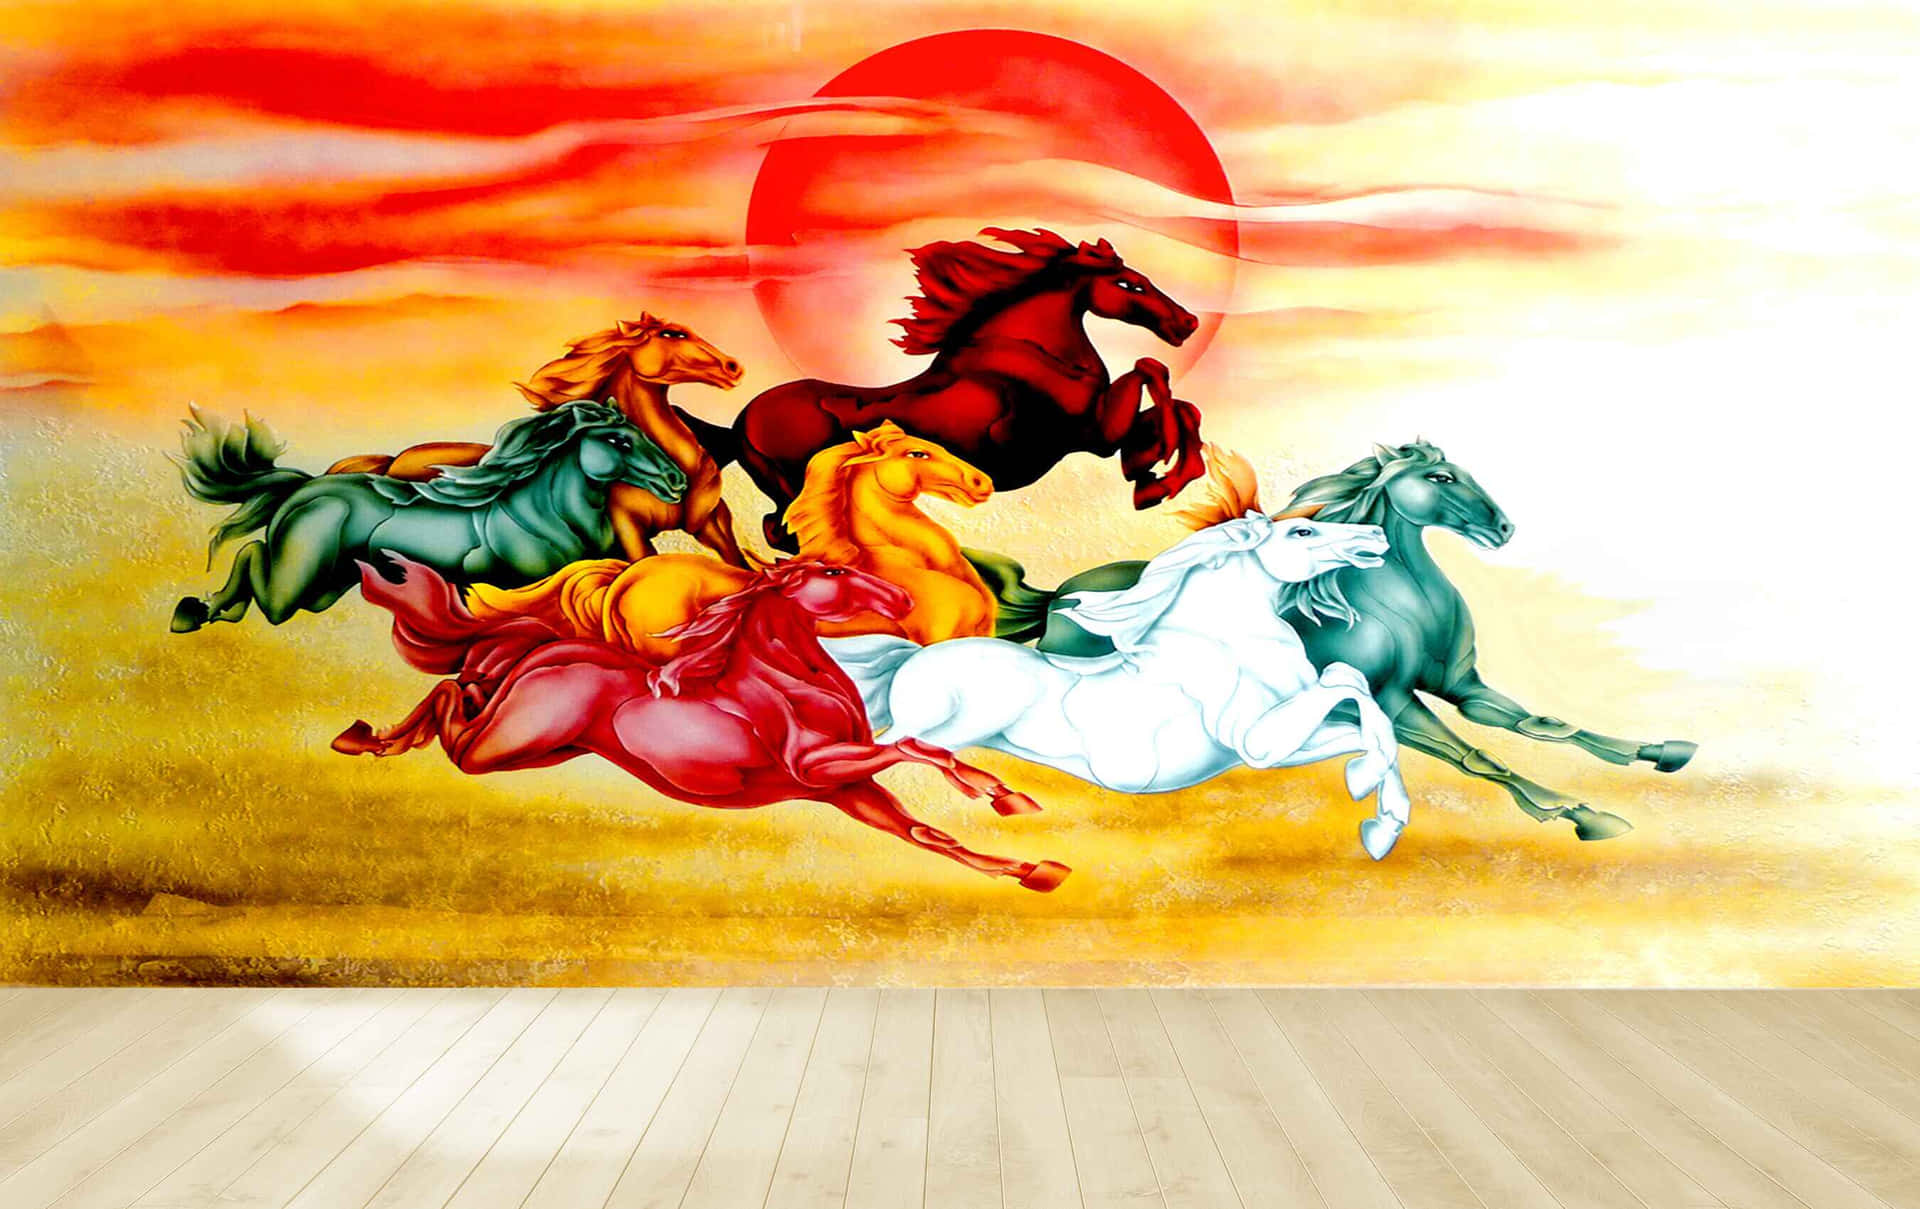 7hästar Galopperar Mot Röd Sol - Dator- Eller Mobilbakgrundsbild. Wallpaper